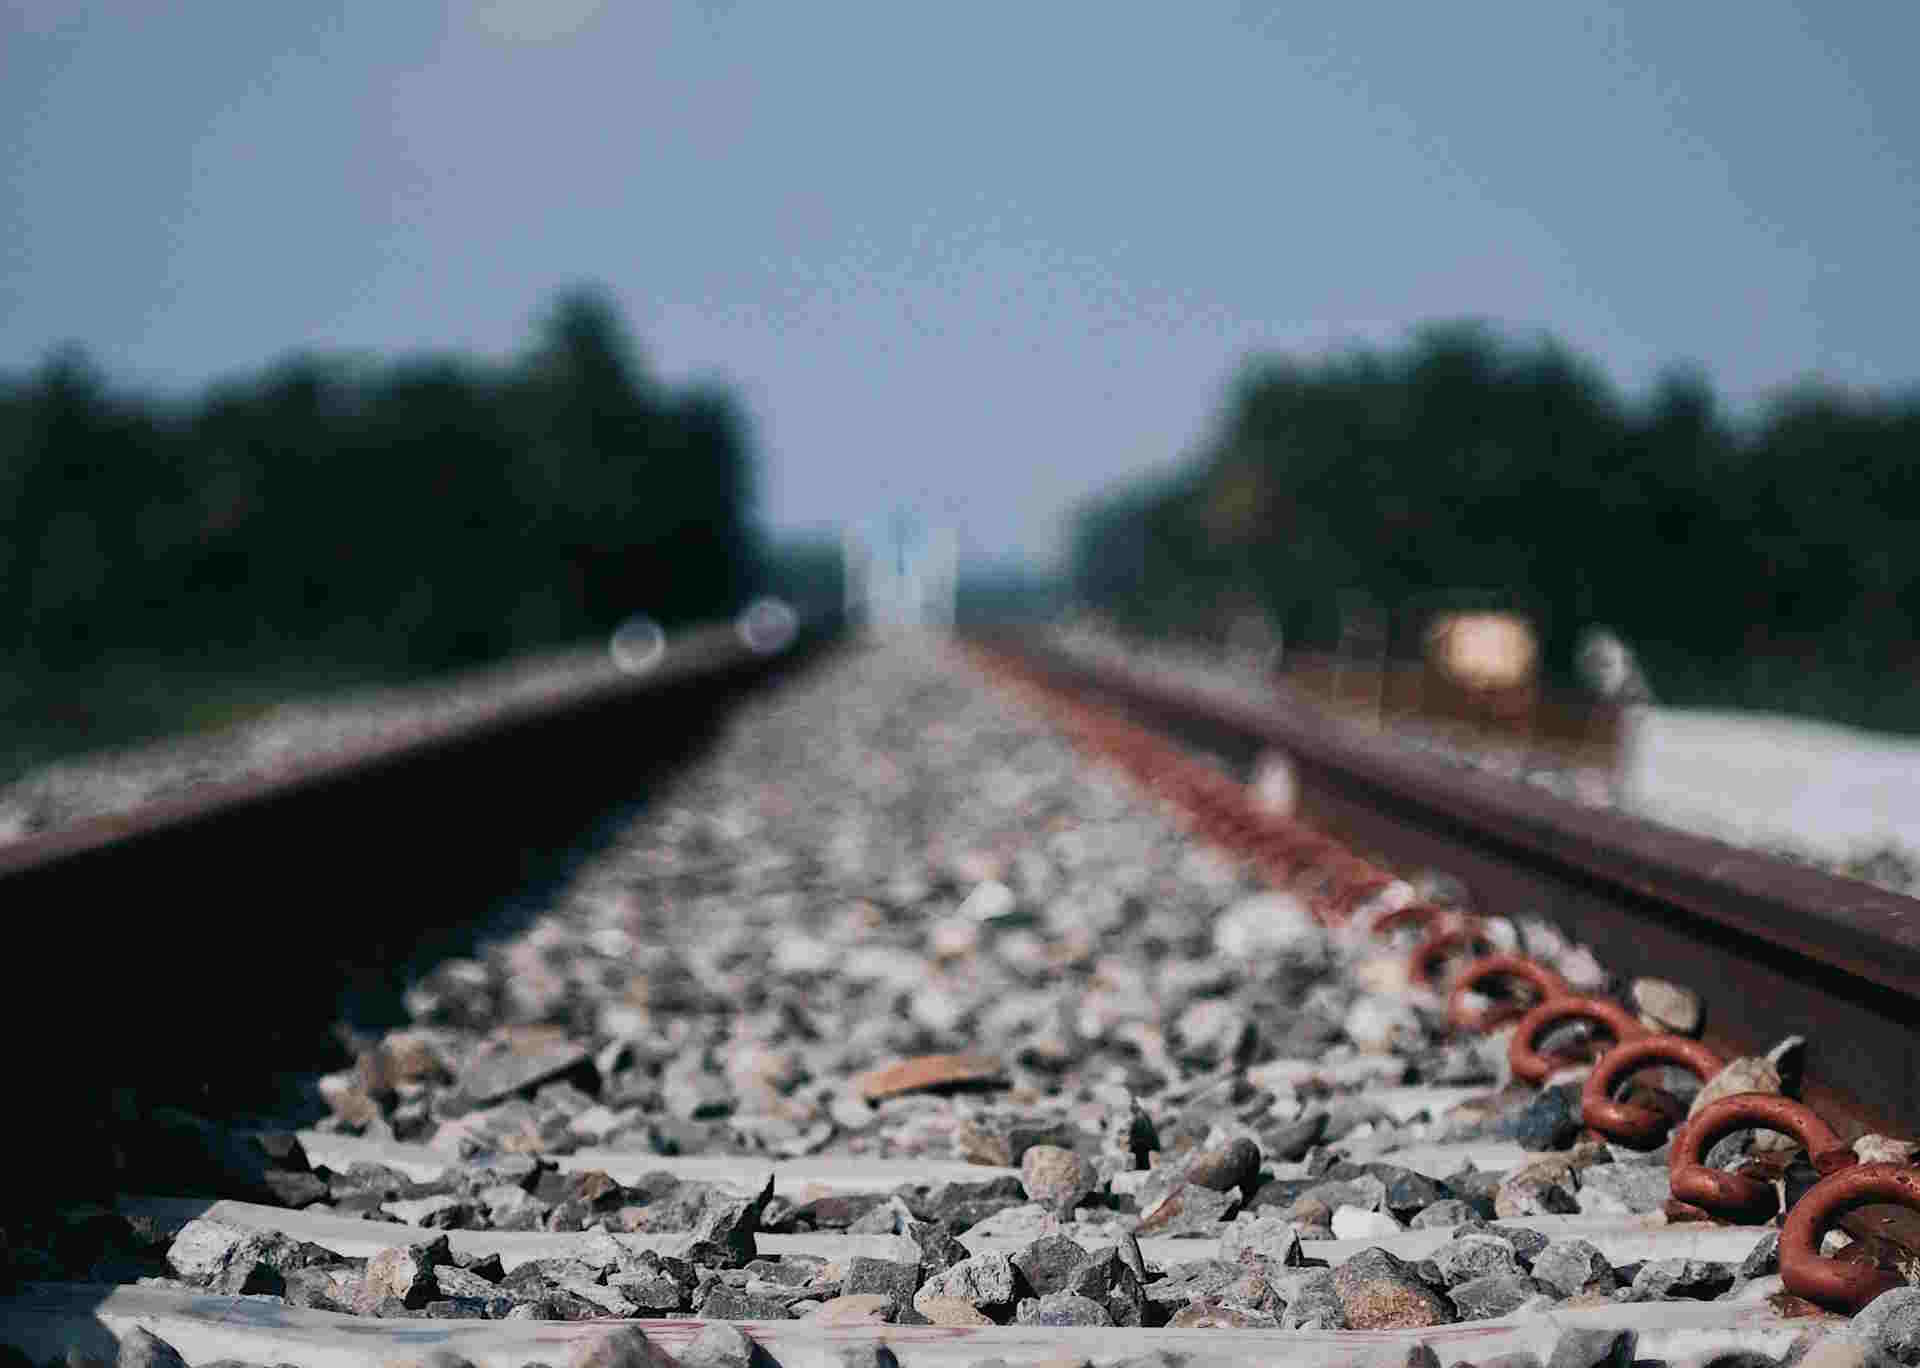 Treni Benevento-Foggia: riprende la circolazione dopo l’interruzione per la frana